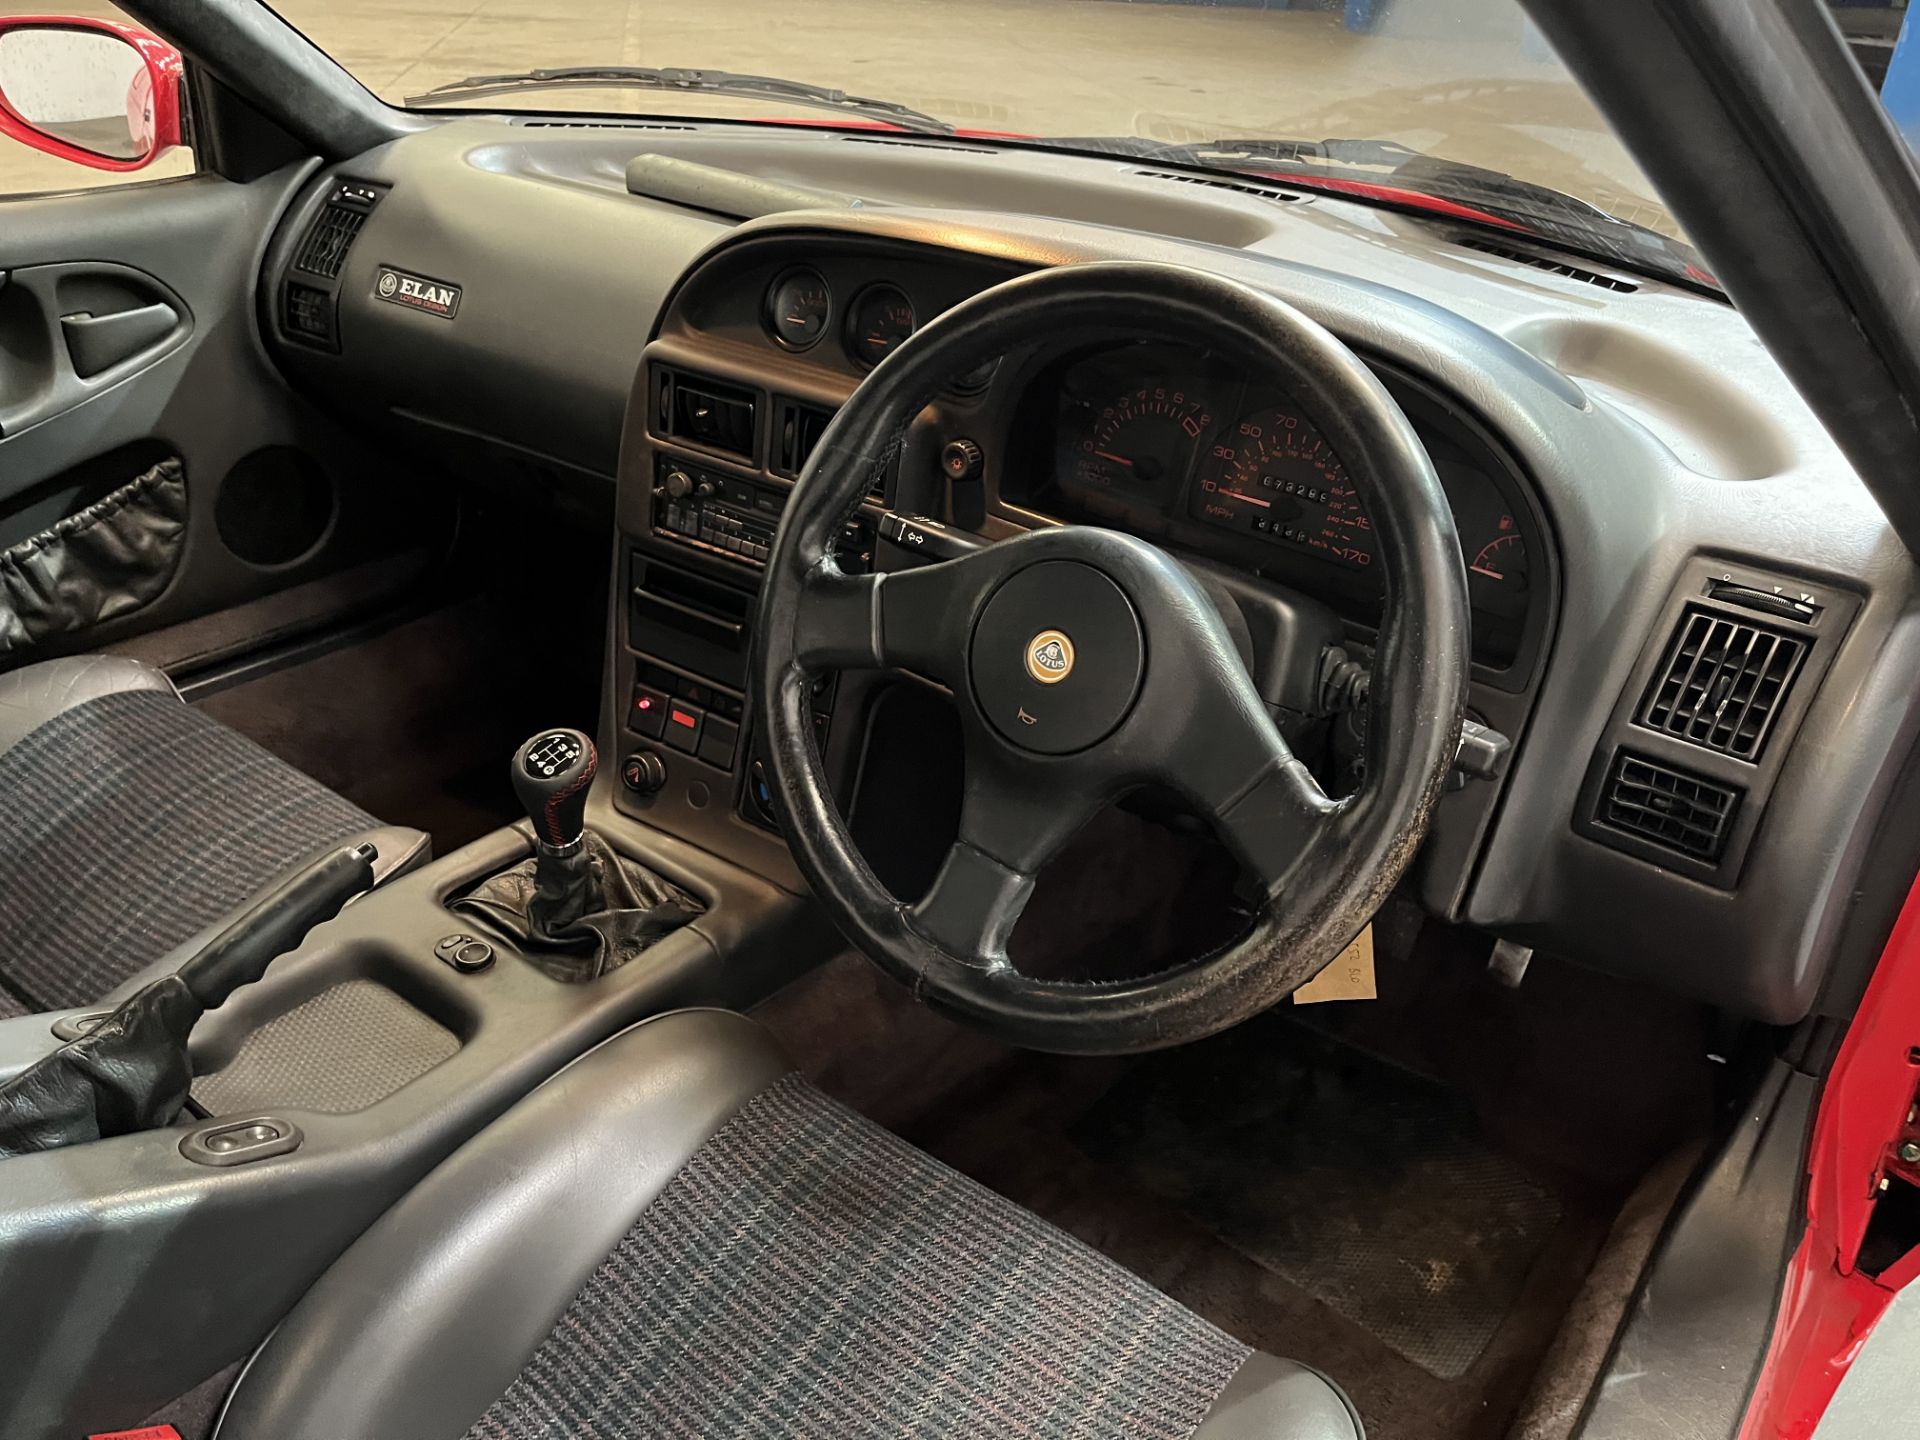 1990 Lotus Elan SE Turbo - 1588cc - Image 16 of 23